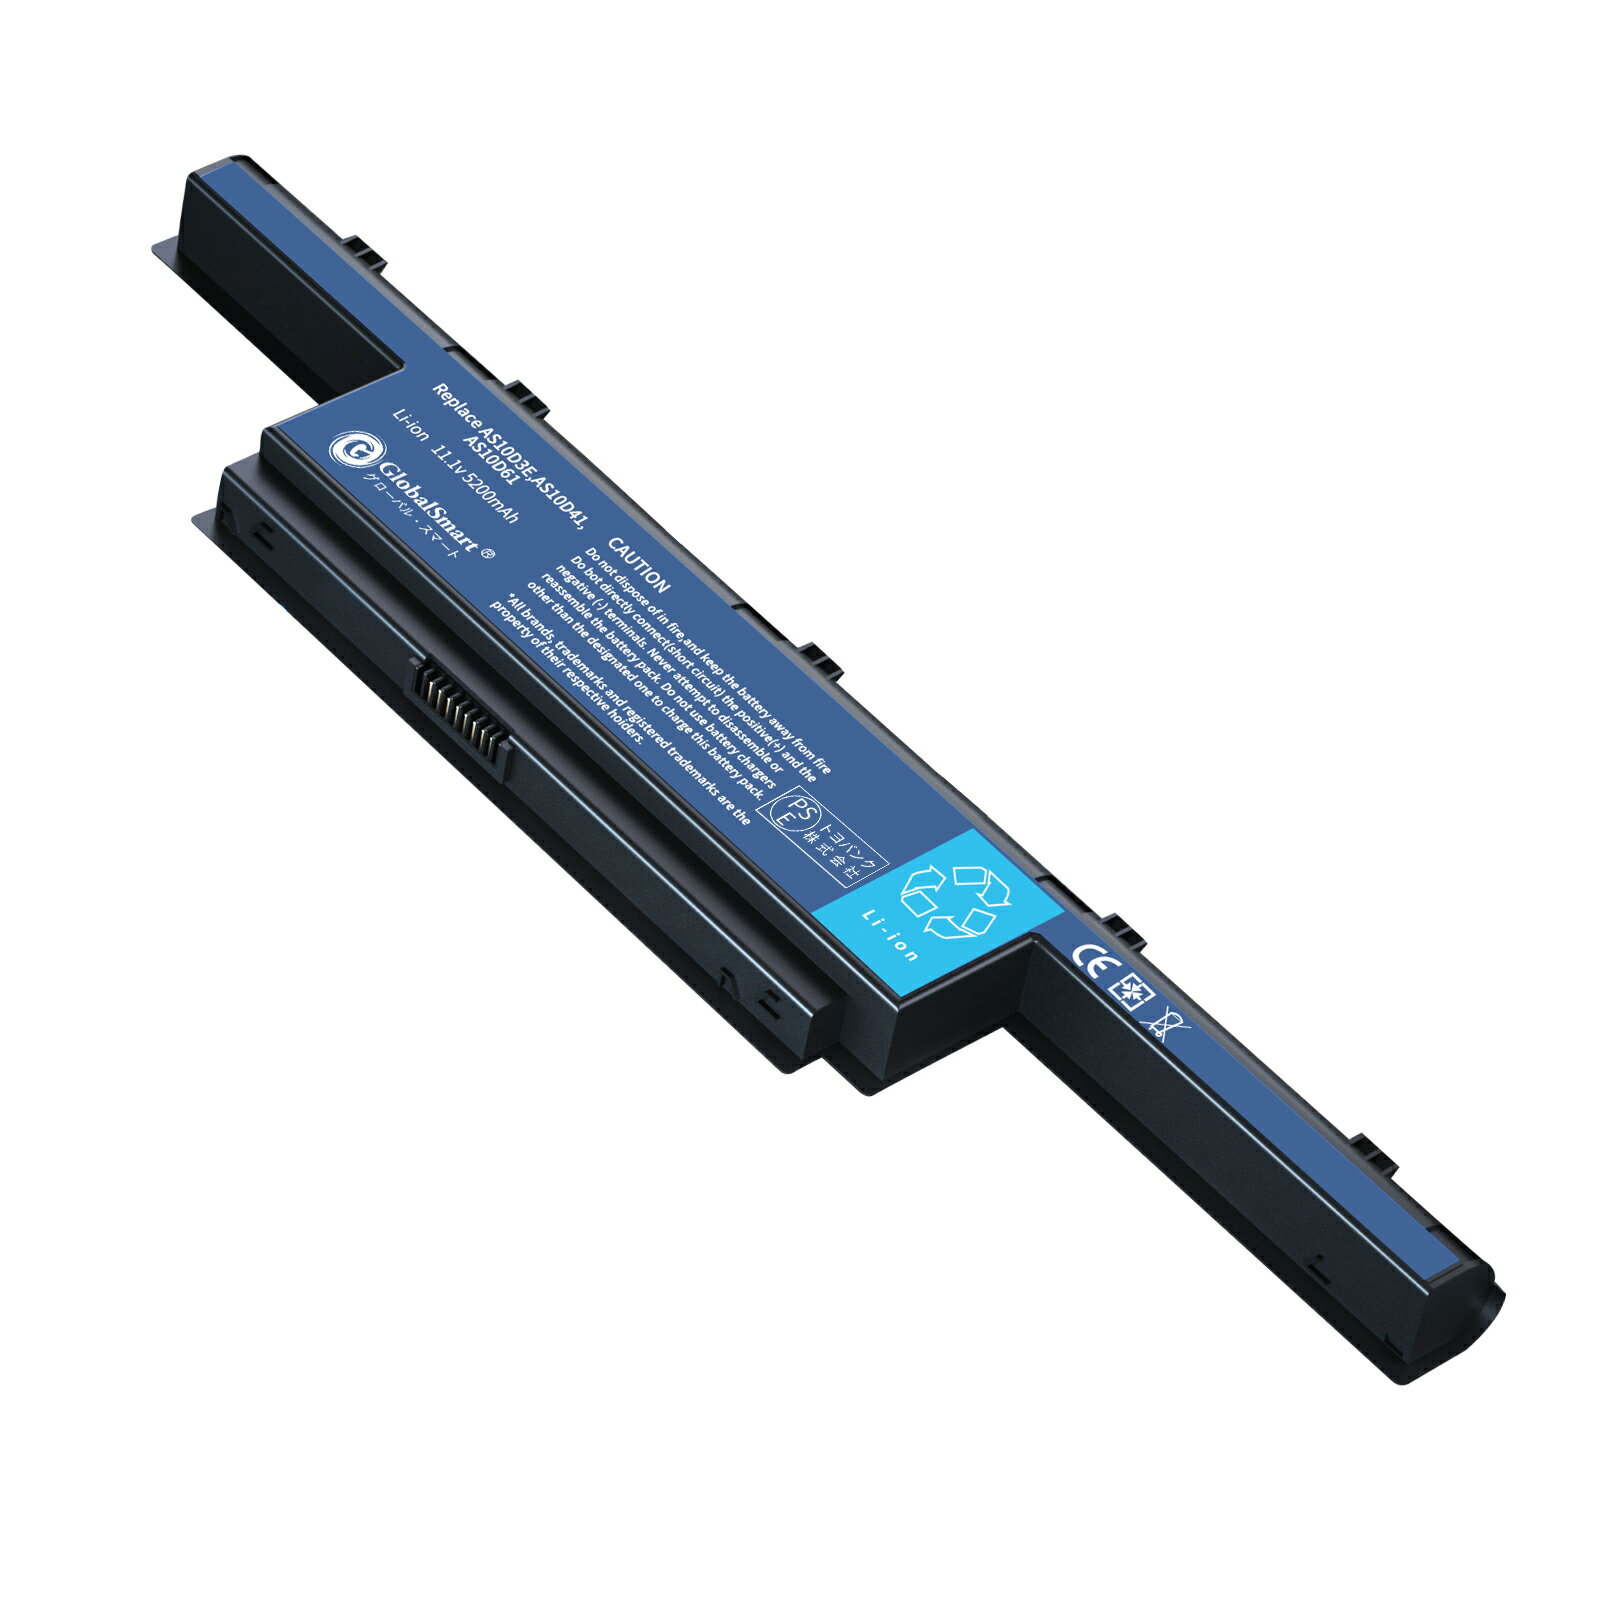 Globalsmart 新品 ACER エイサー D528 大容量互換 WKX バッテリパック【5200mAh 11.1V】対応用 1年保証 高性能 PSE認証 互換バッテリー